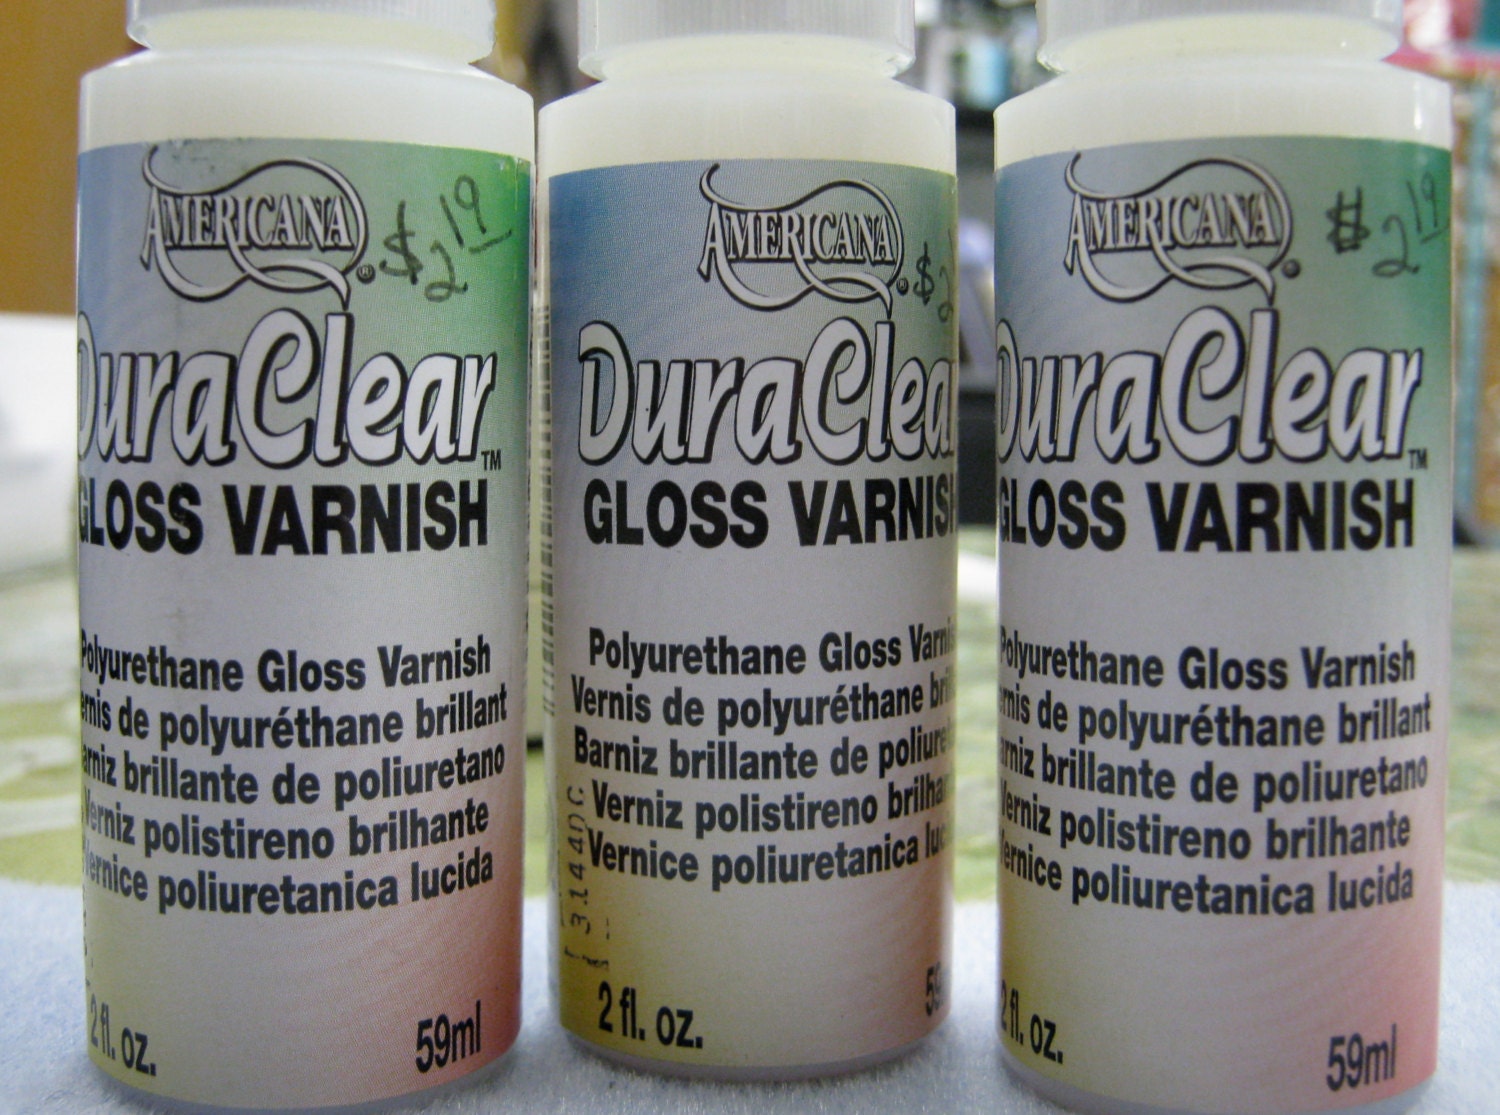 Duraclear Acrylic Varnish by Decoart, 2 Ounce Bottle, 5 Options 